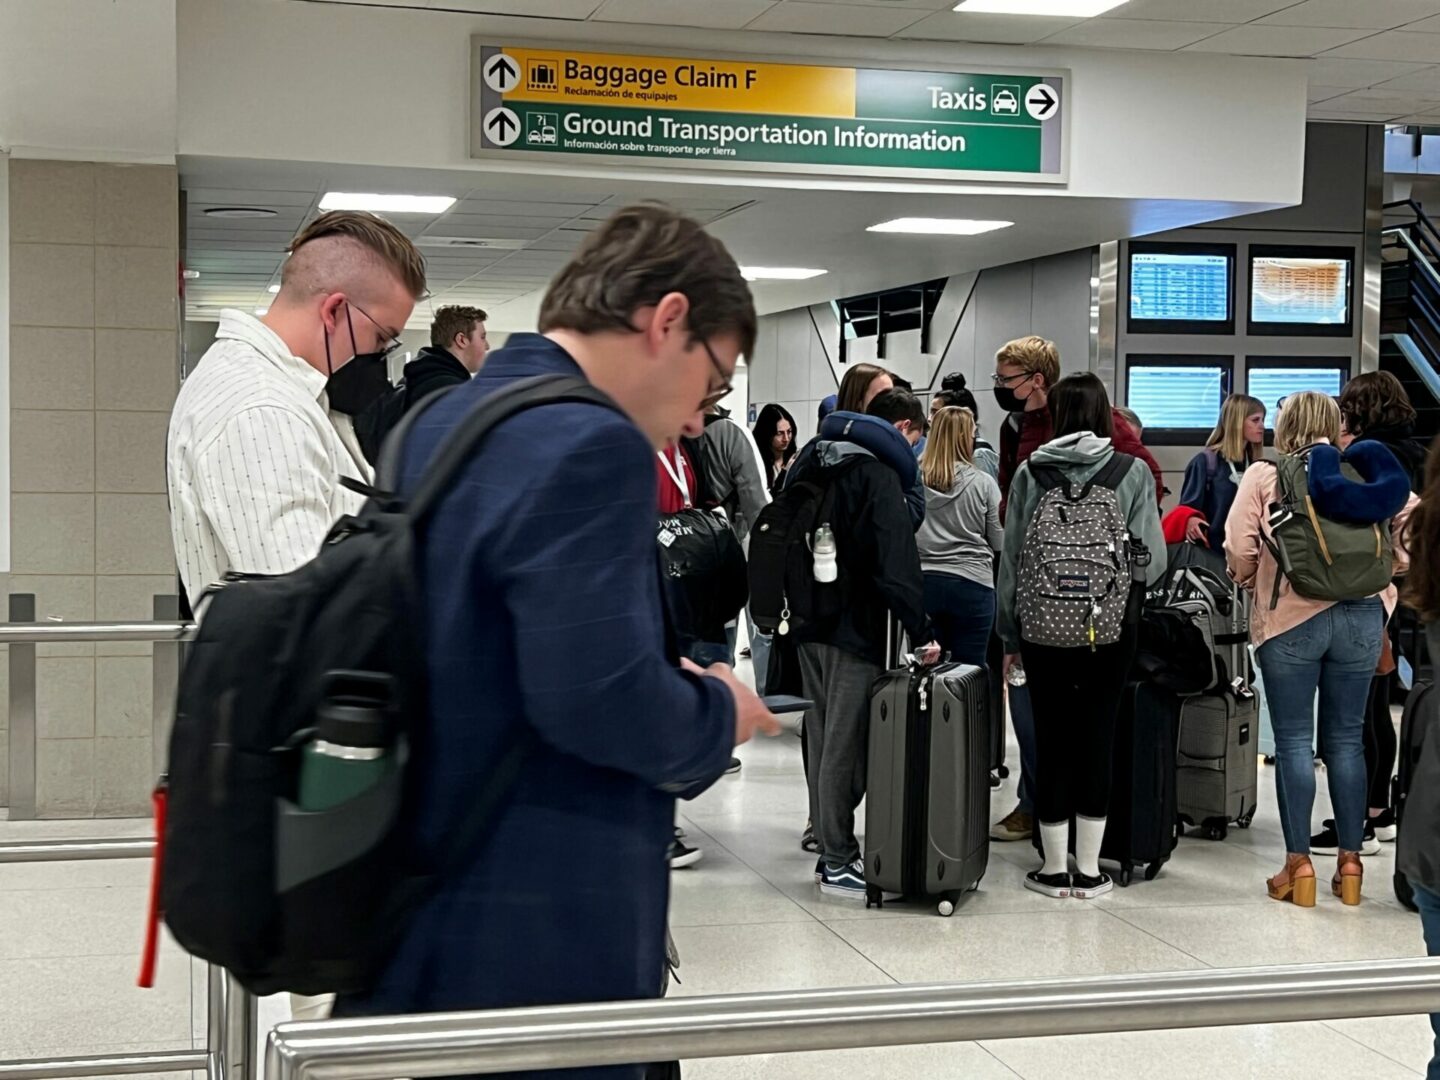 Más de 550 vuelos cancelados en EEUU por falta de personal ante alta demanda